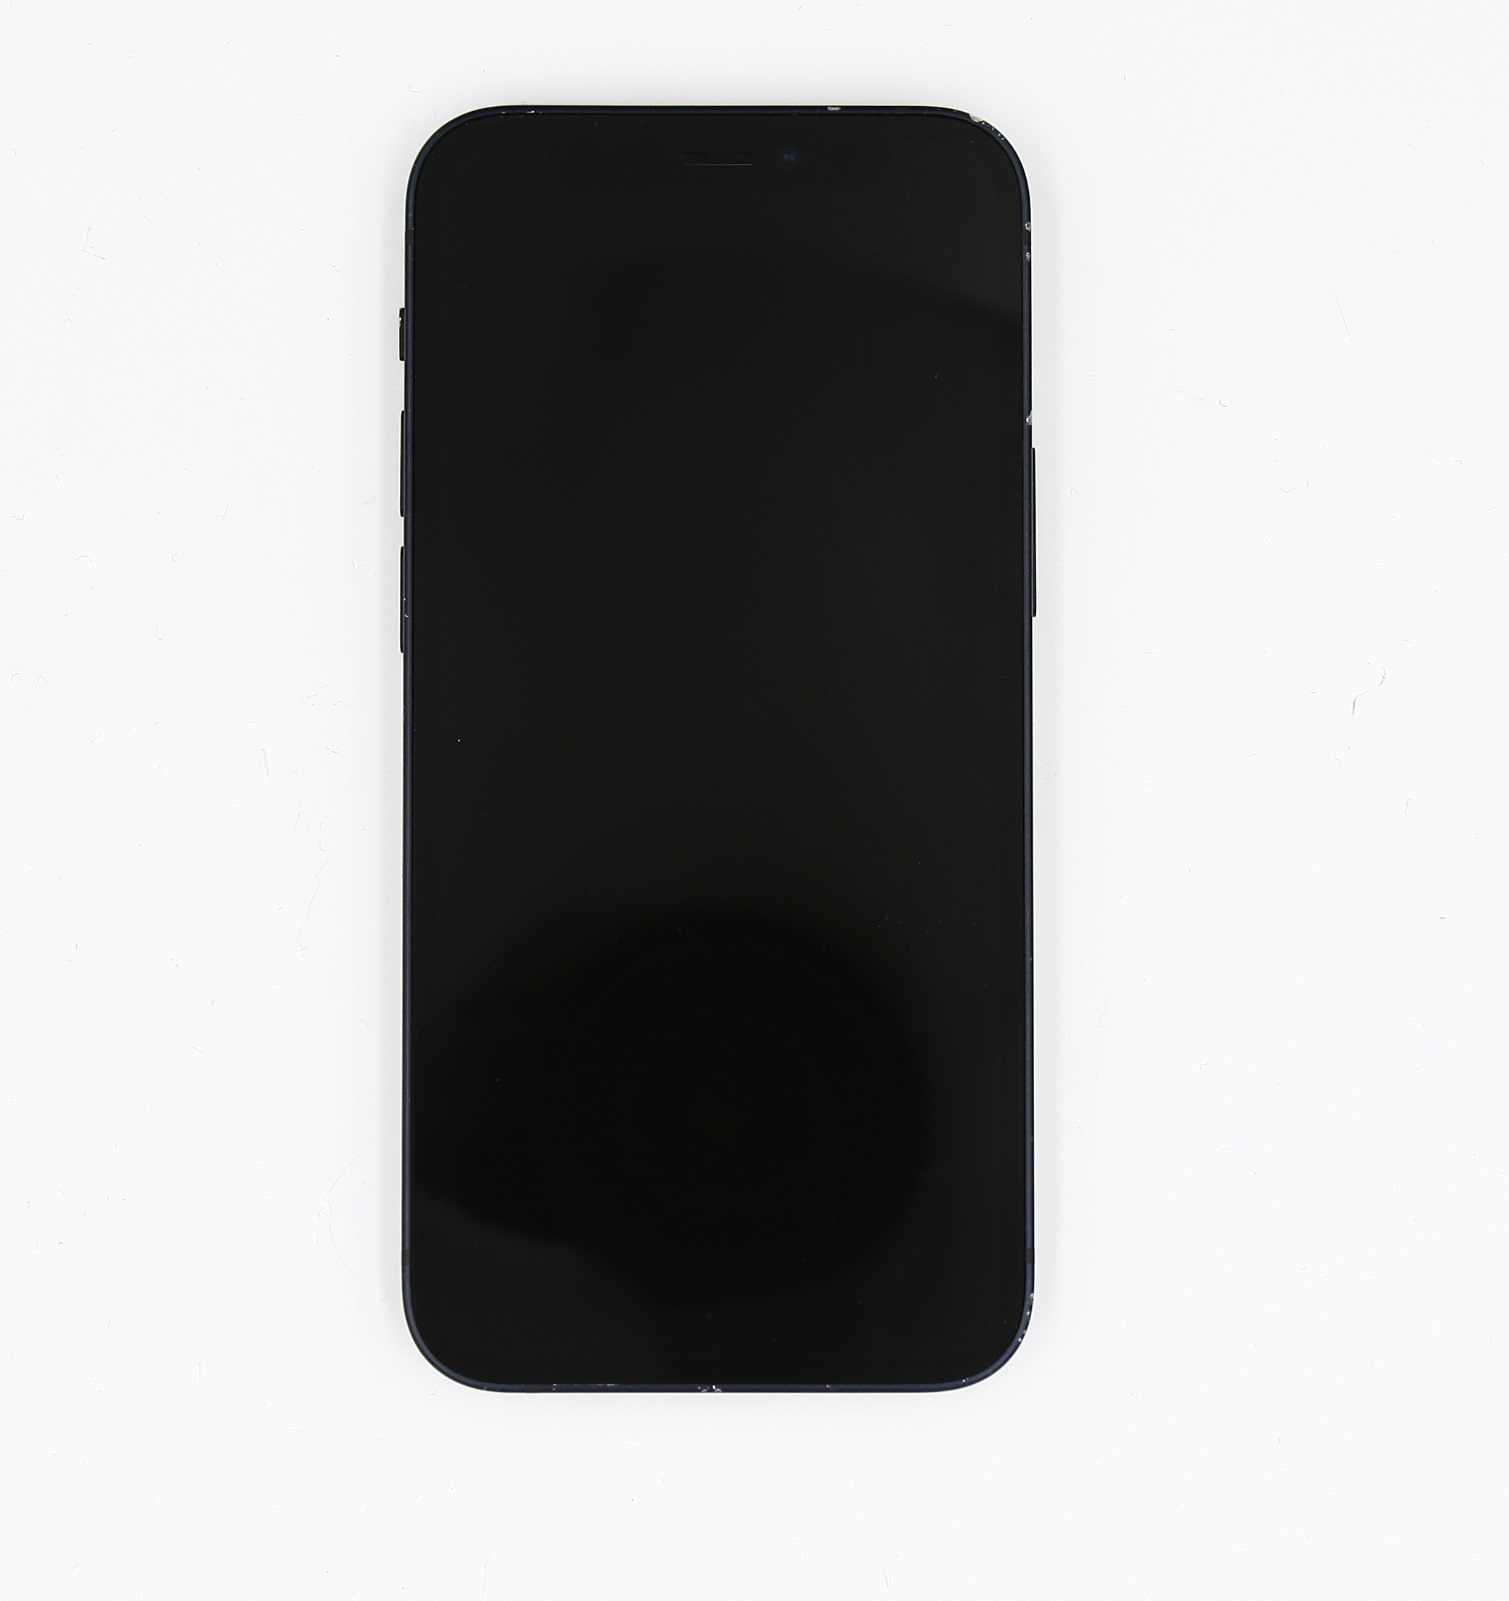 Apple iPhone 12 Mini 256GB Black (MGDR3J/A) 2